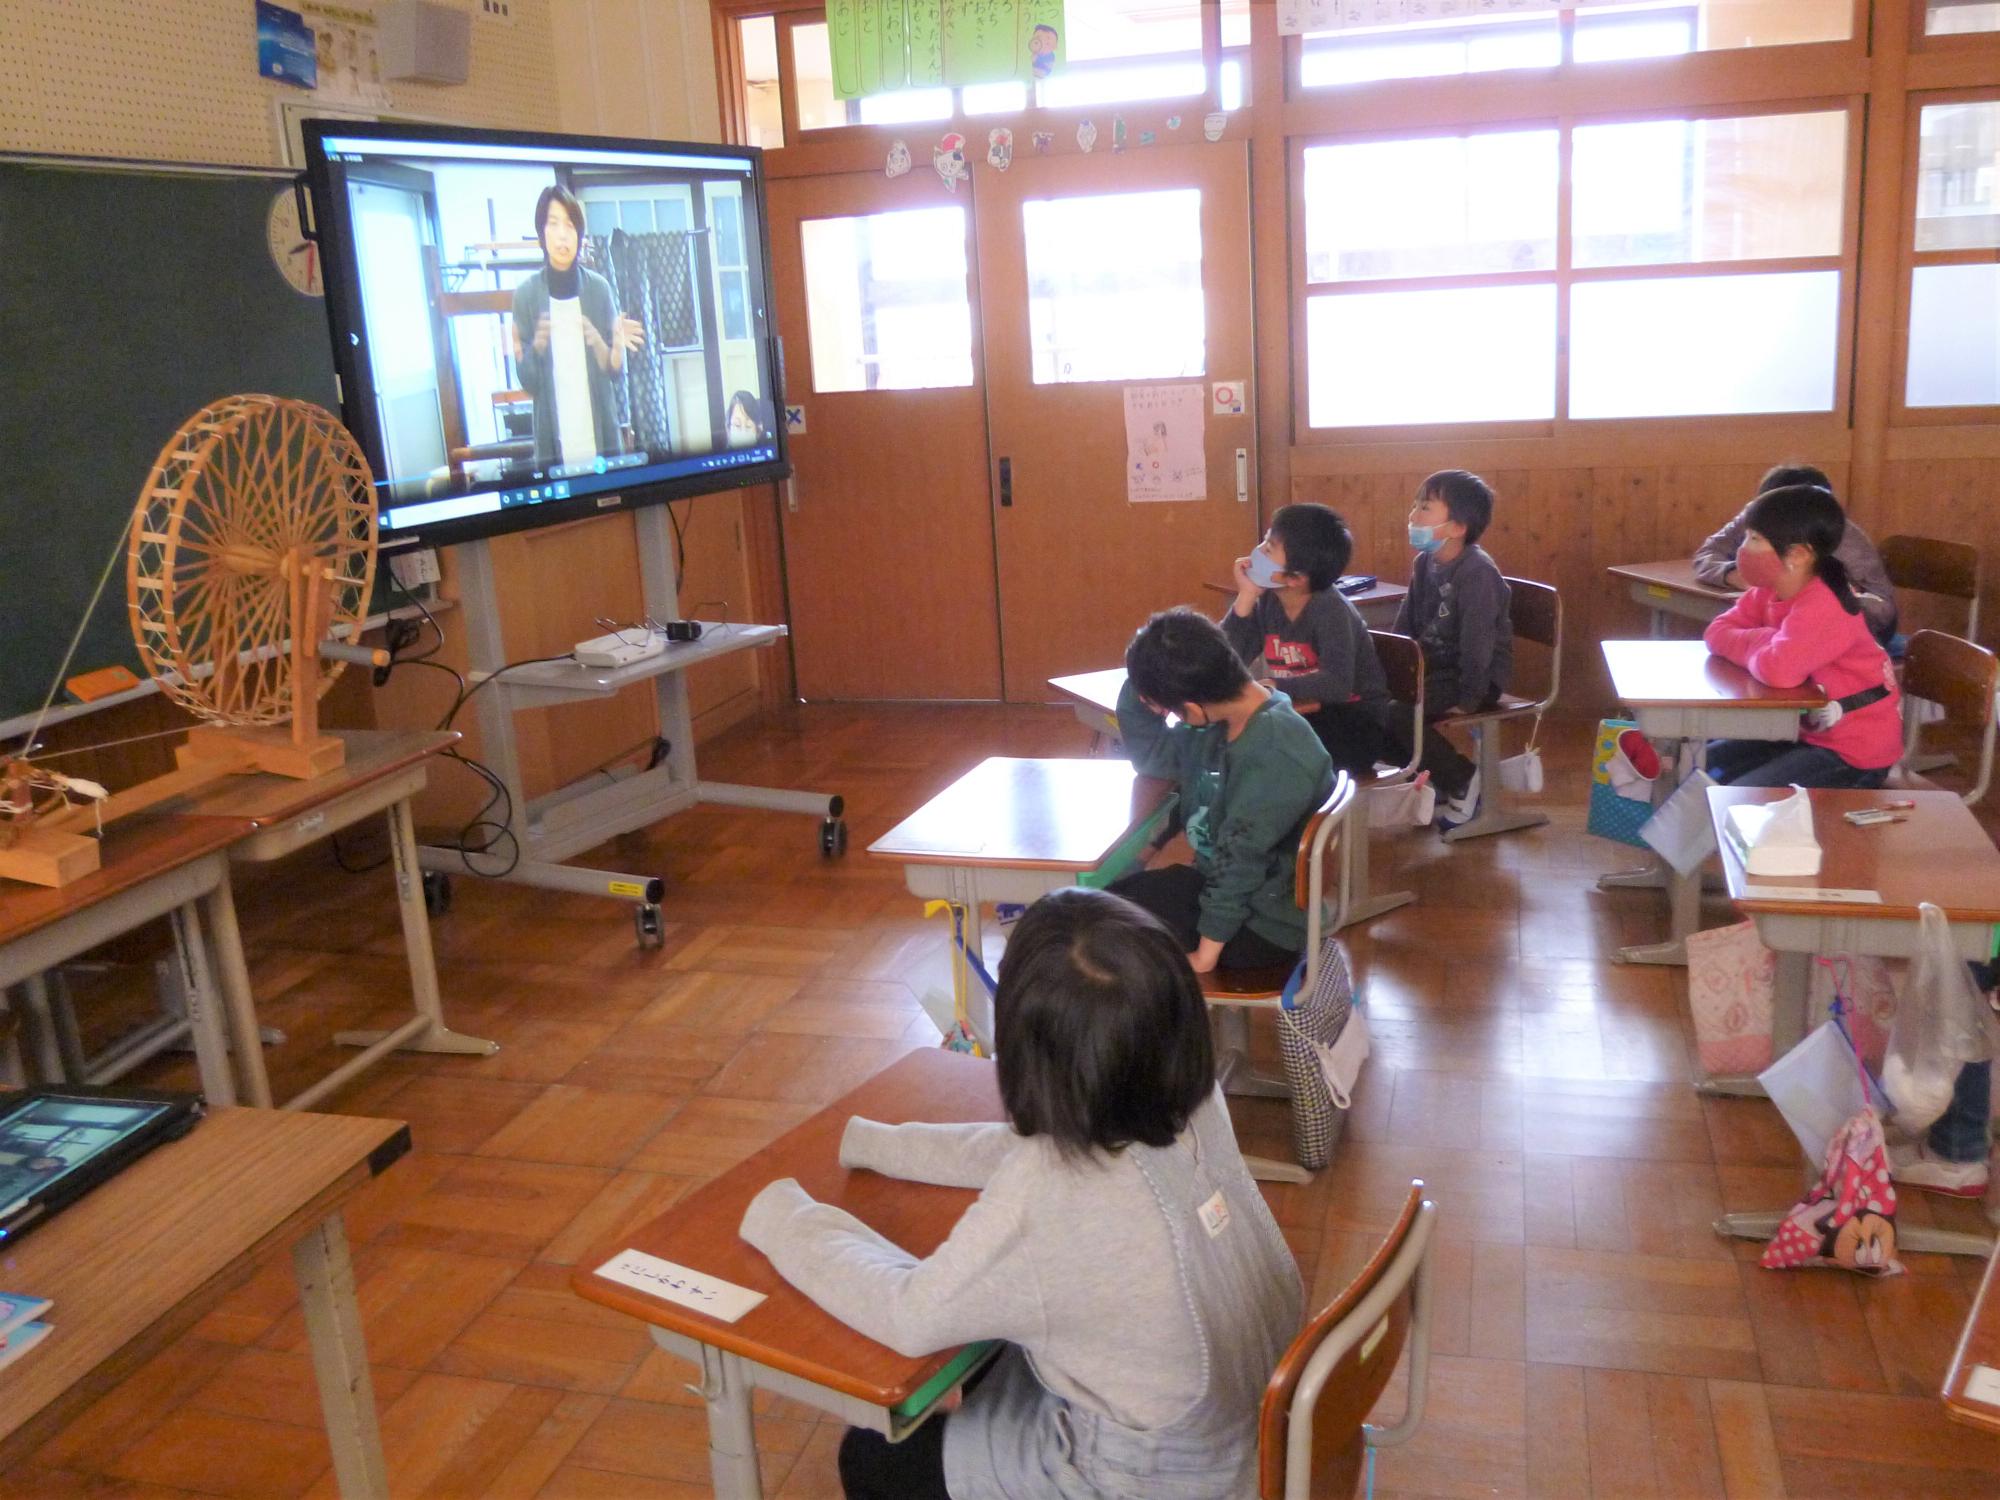 教室でビデオから流れる説明を見る児童たち